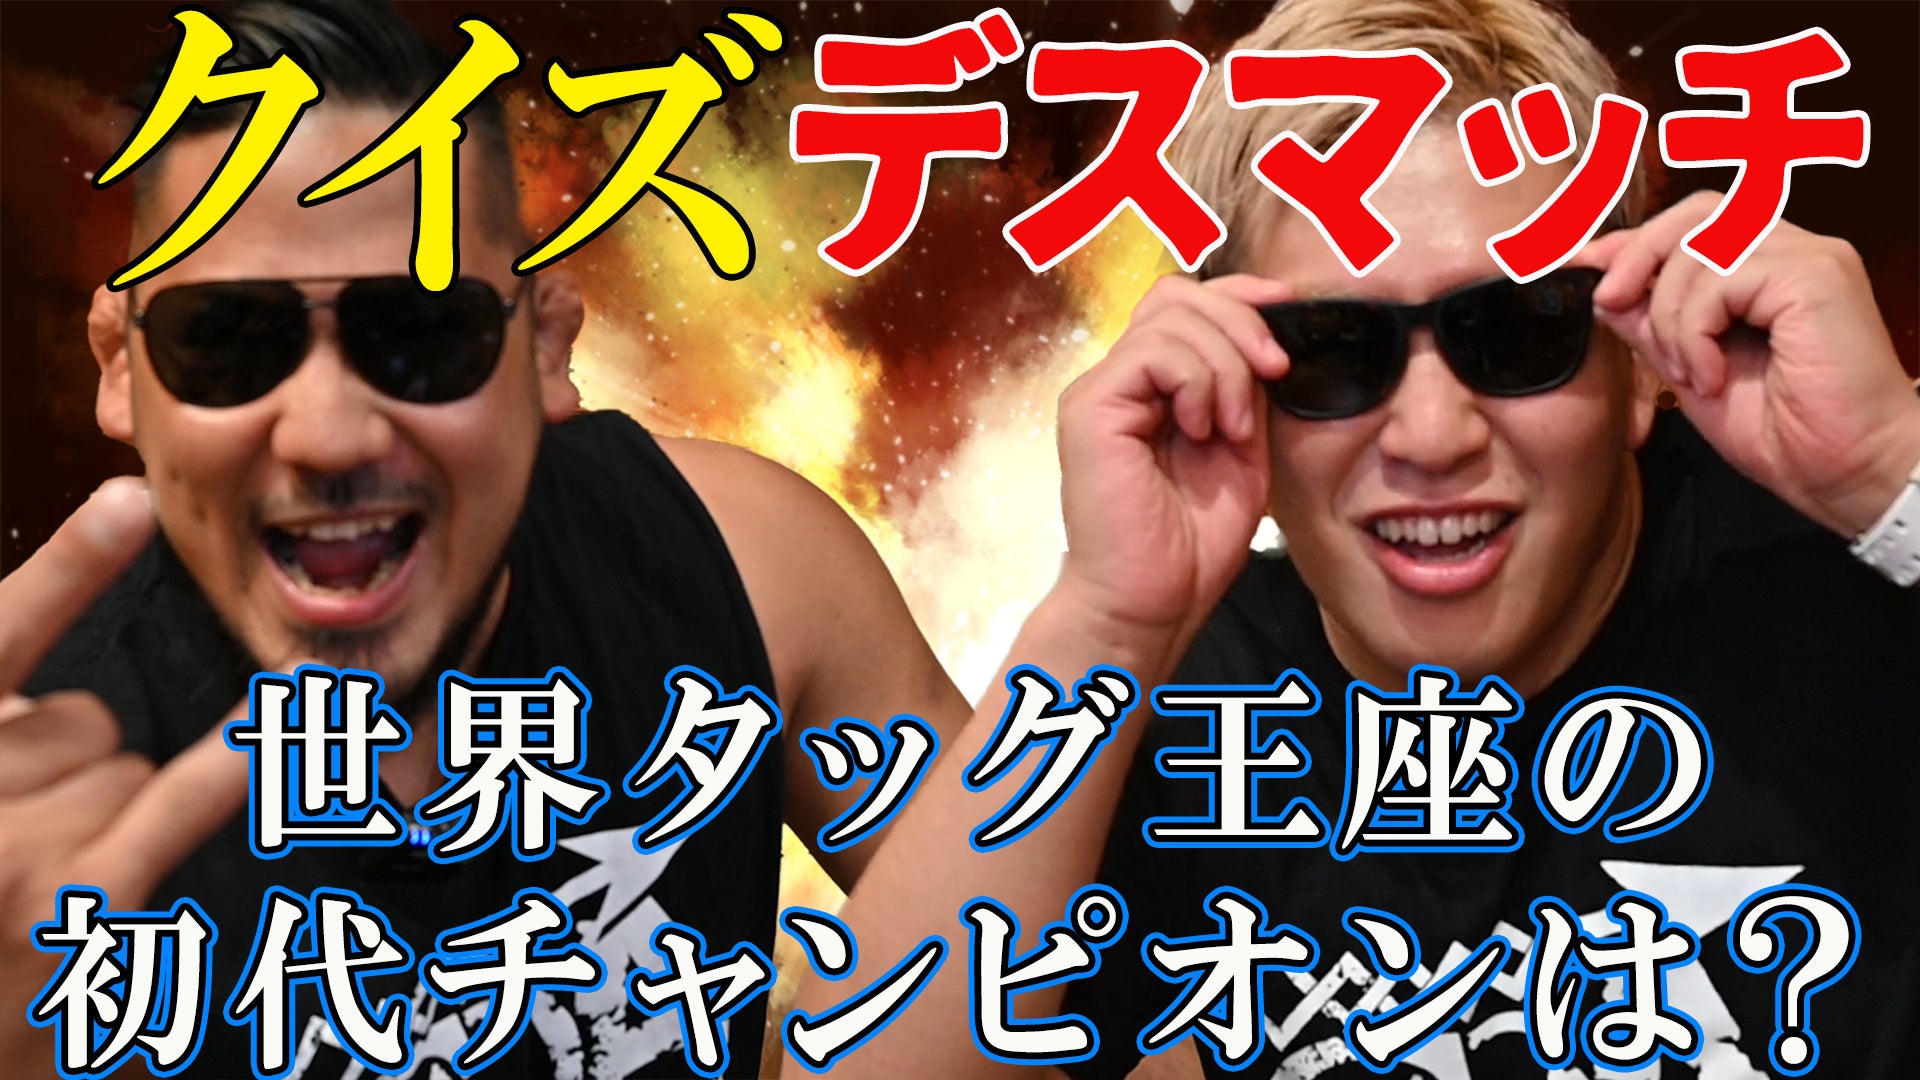 全日本プロレスの選手がクイズ? やっぱりステーキ YouTube チャンネルで 全日本プロレス選手との動画を配信!のサブ画像1